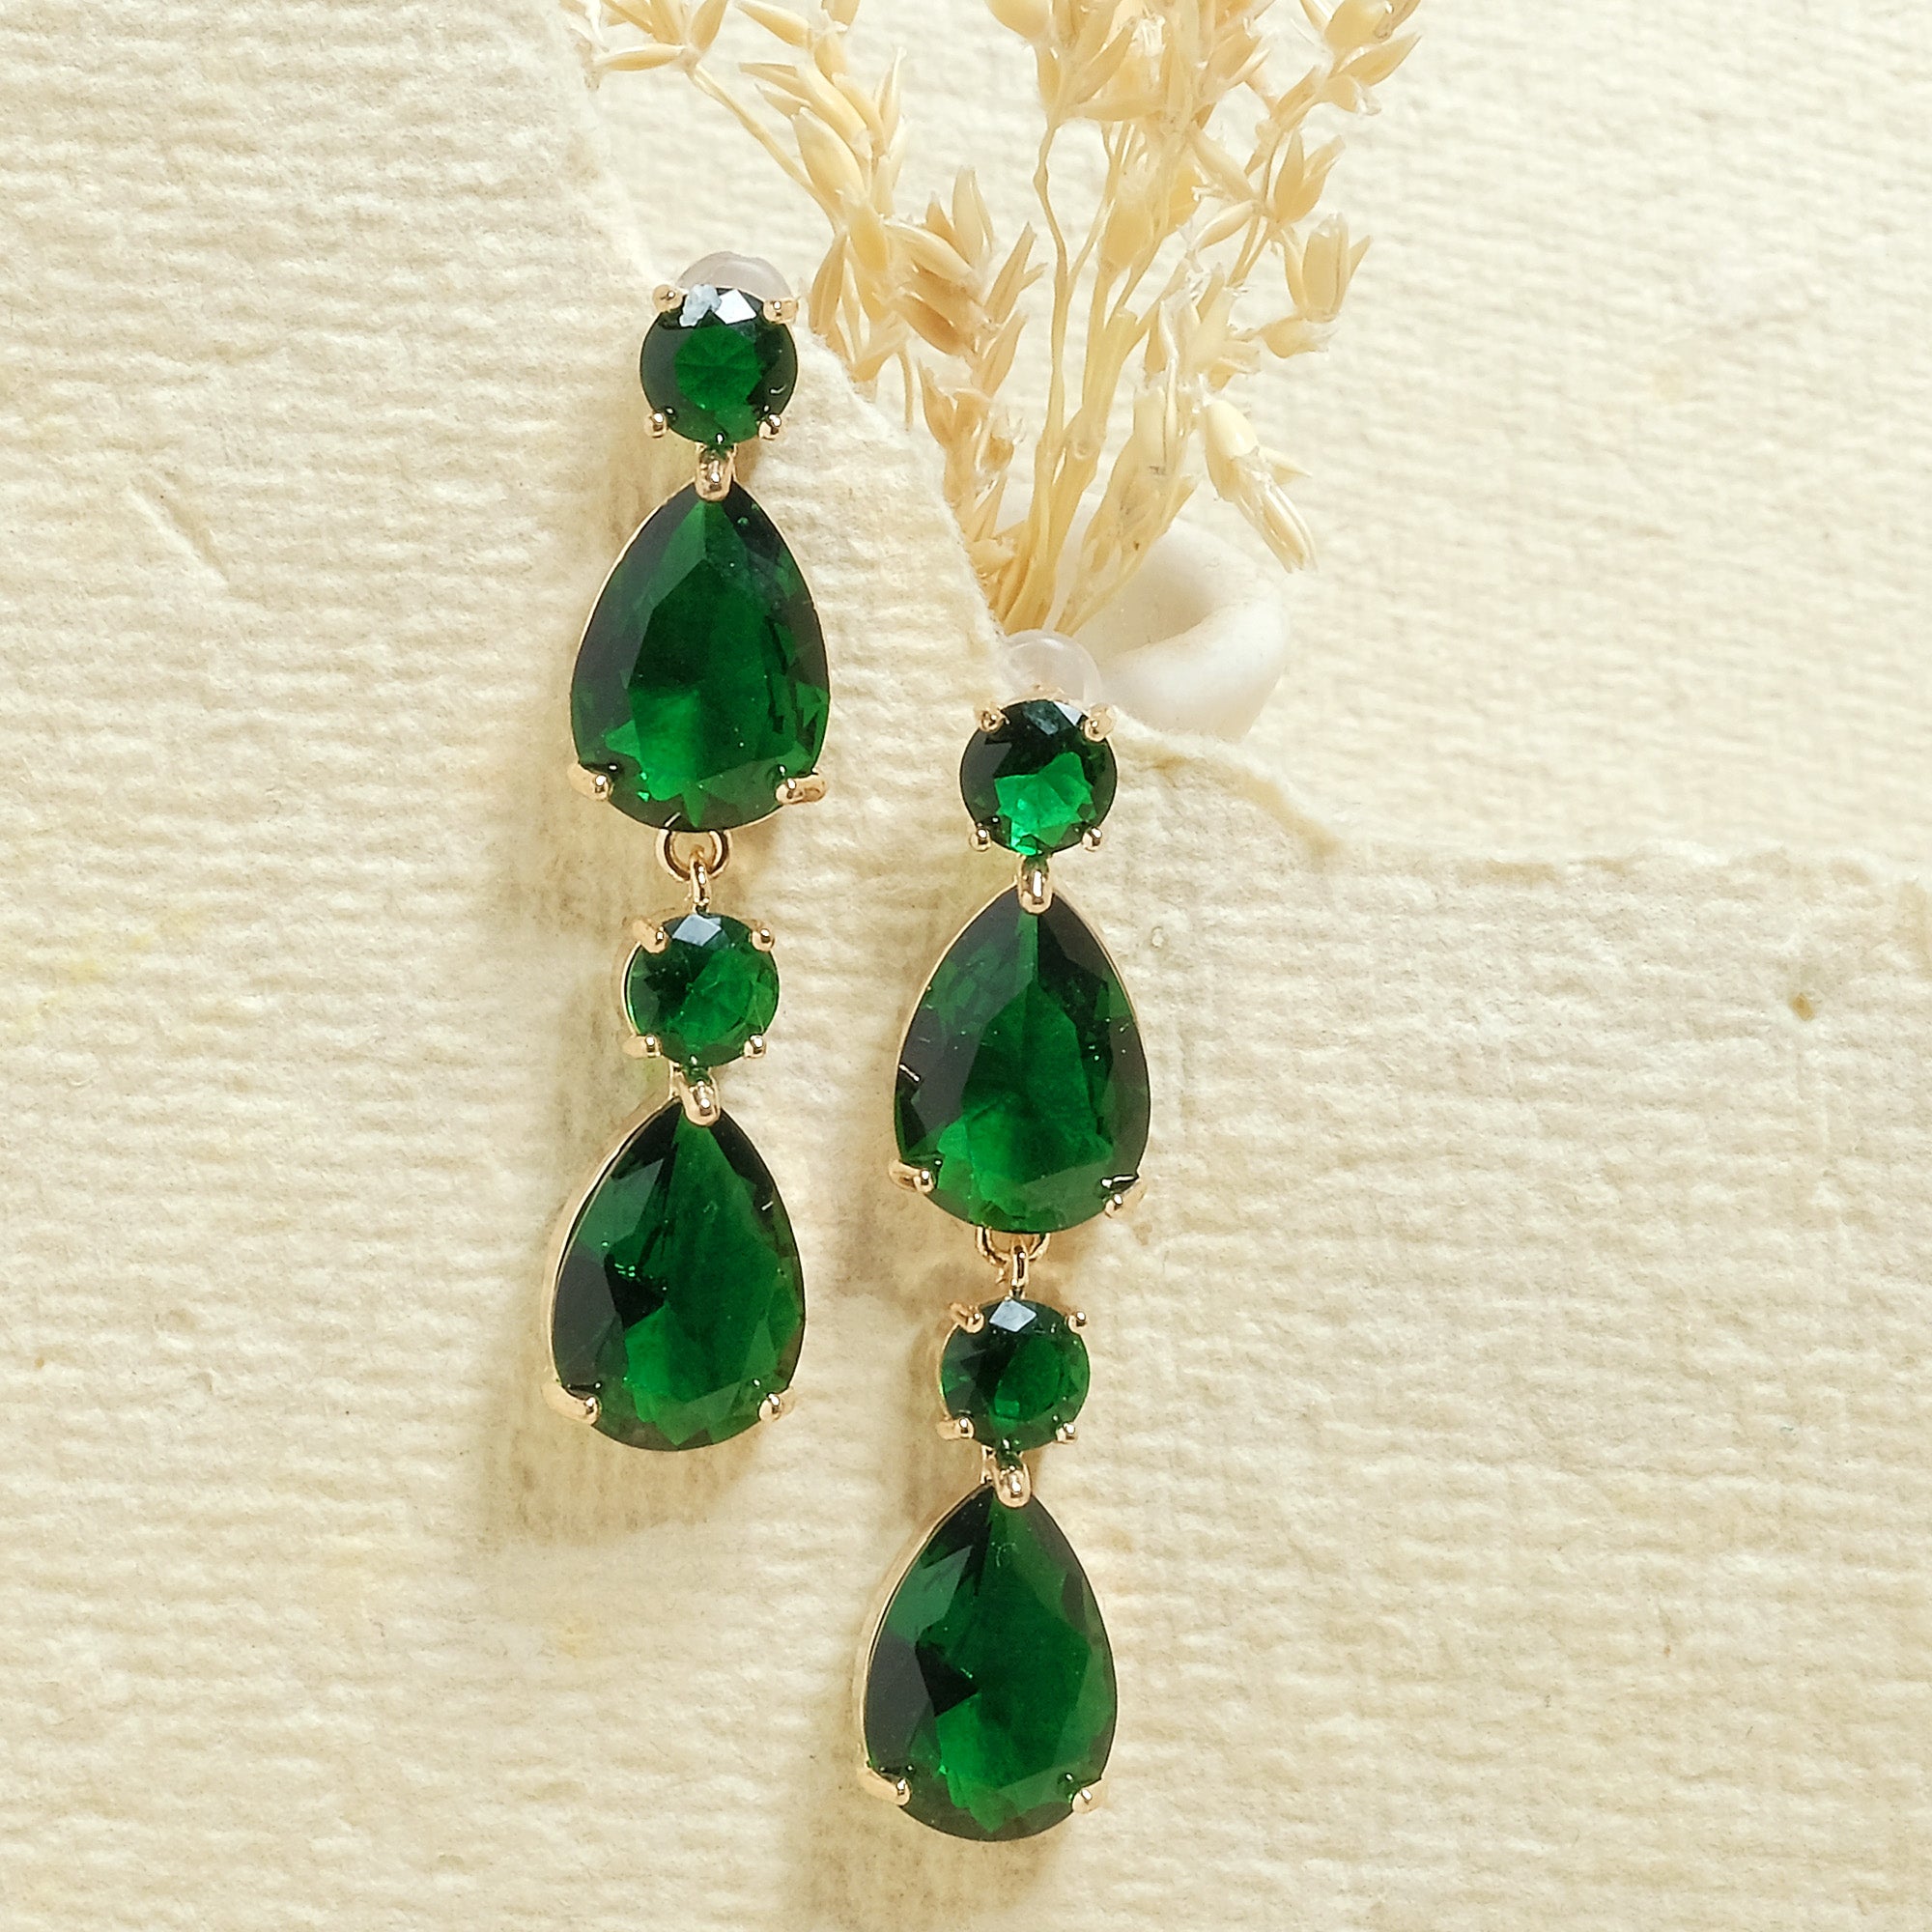 Emerald Bridal Earrings Pearl Earrings Art Deco Wedding - Etsy UK |  Bridesmaid pearl earrings, Vintage wedding jewelry, Bridal earrings pearl